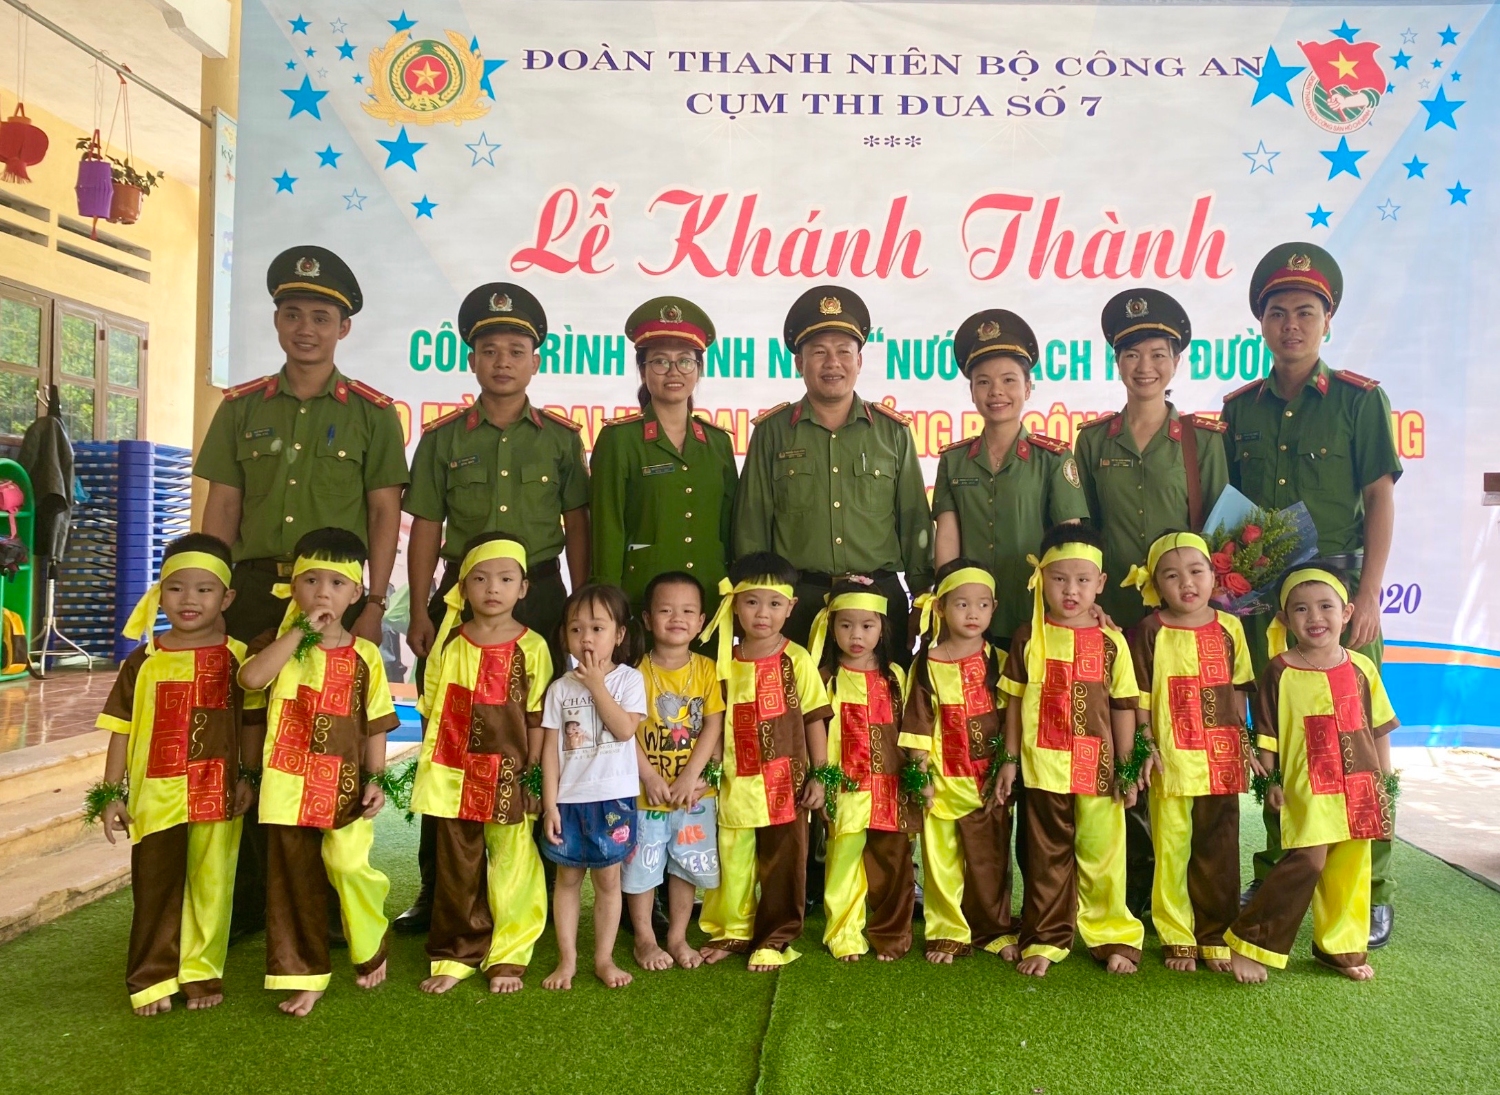 Đoàn thanh niên Công an tỉnh Phú Yên cùng các đơn vị khánh thành và trao tặng công trình “Nước sạch học đường” tại Trường Mẫu giáo Hoa Anh Đào.